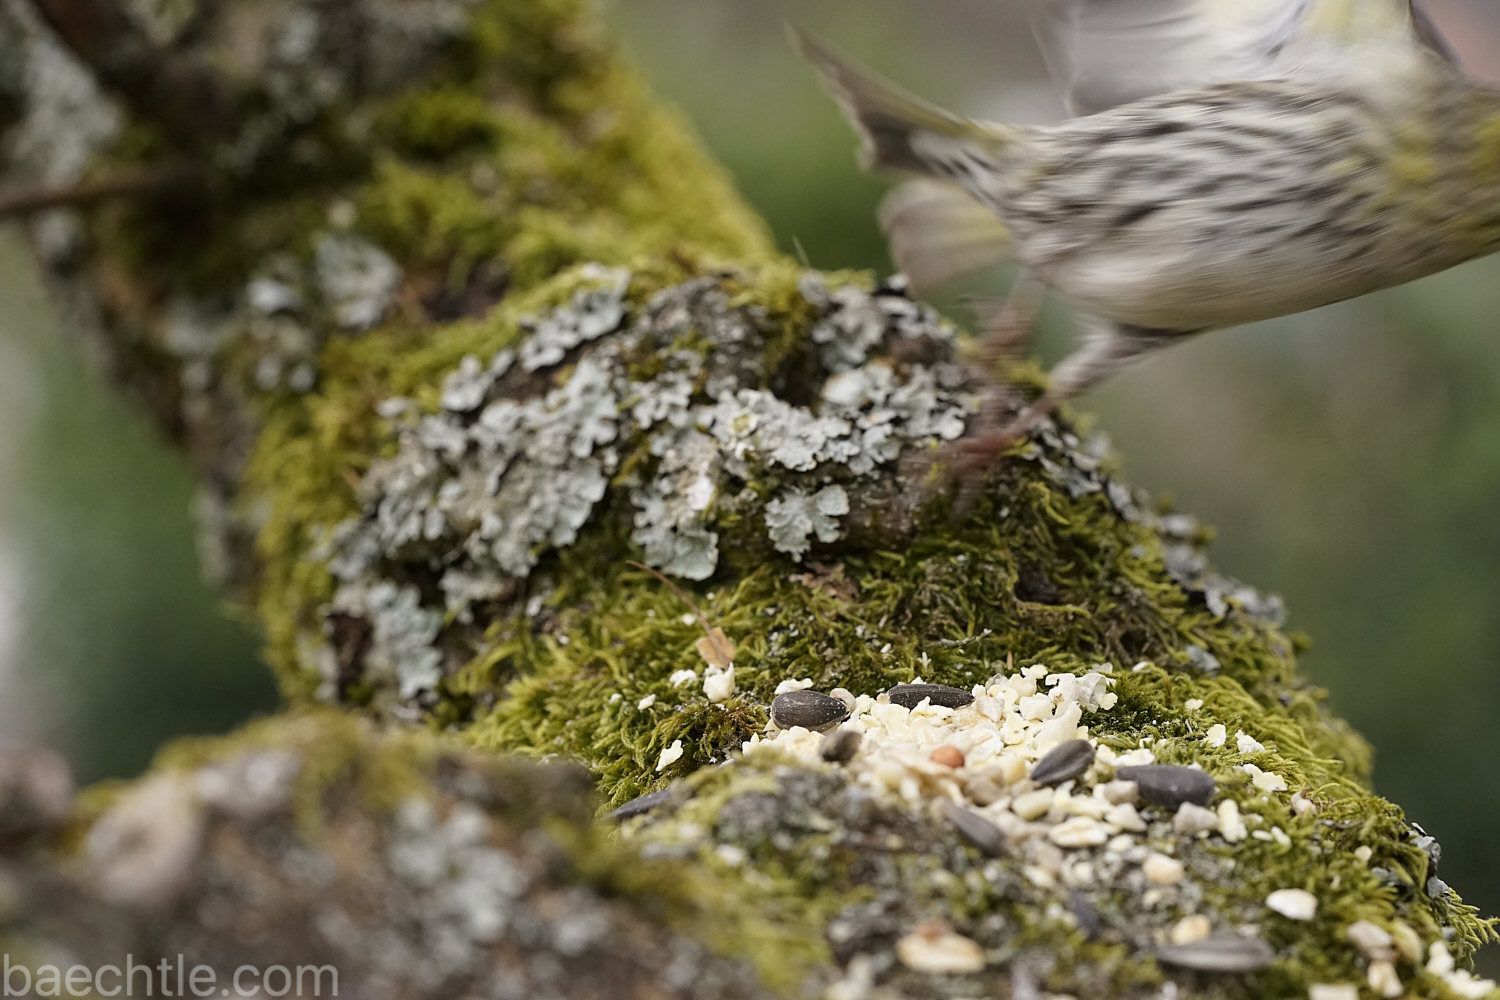 Vogelfotografie: Wenn Vogelmodels das Weite suchen